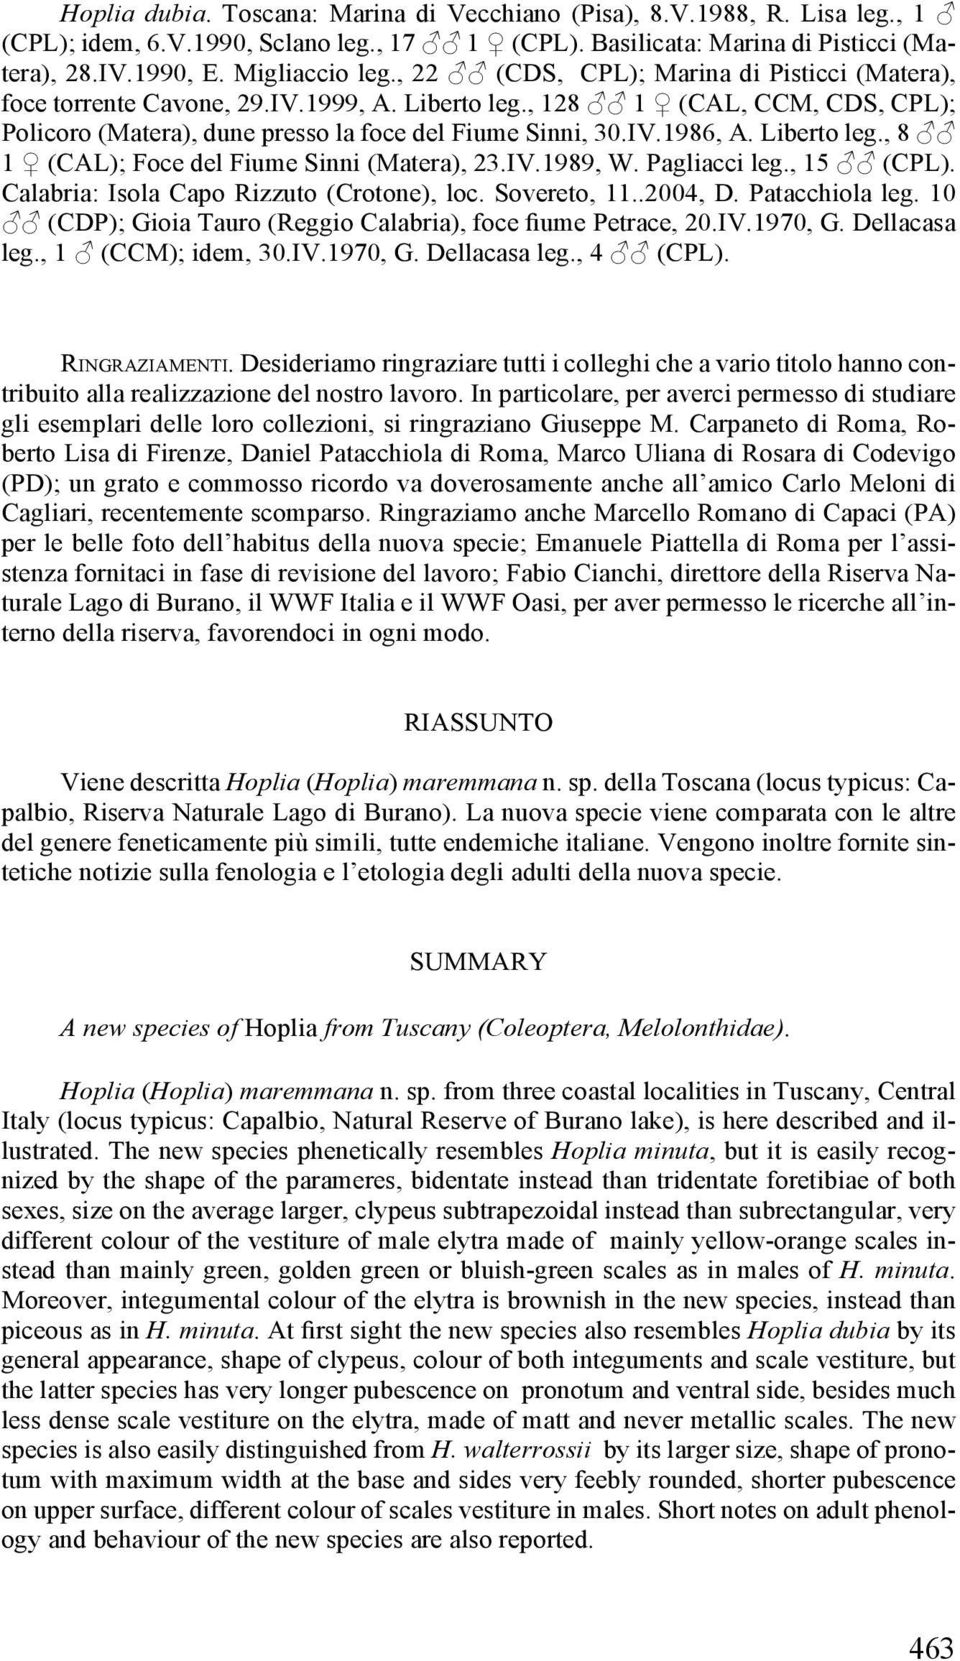 Liberto leg., 8 1 (CAL); Foce del Fiume Sinni (Matera), 23.IV.1989, W. Pagliacci leg., 15 (CPL). Calabria: Isola Capo Rizzuto (Crotone), loc. Sovereto, 11..2004, D. Patacchiola leg.